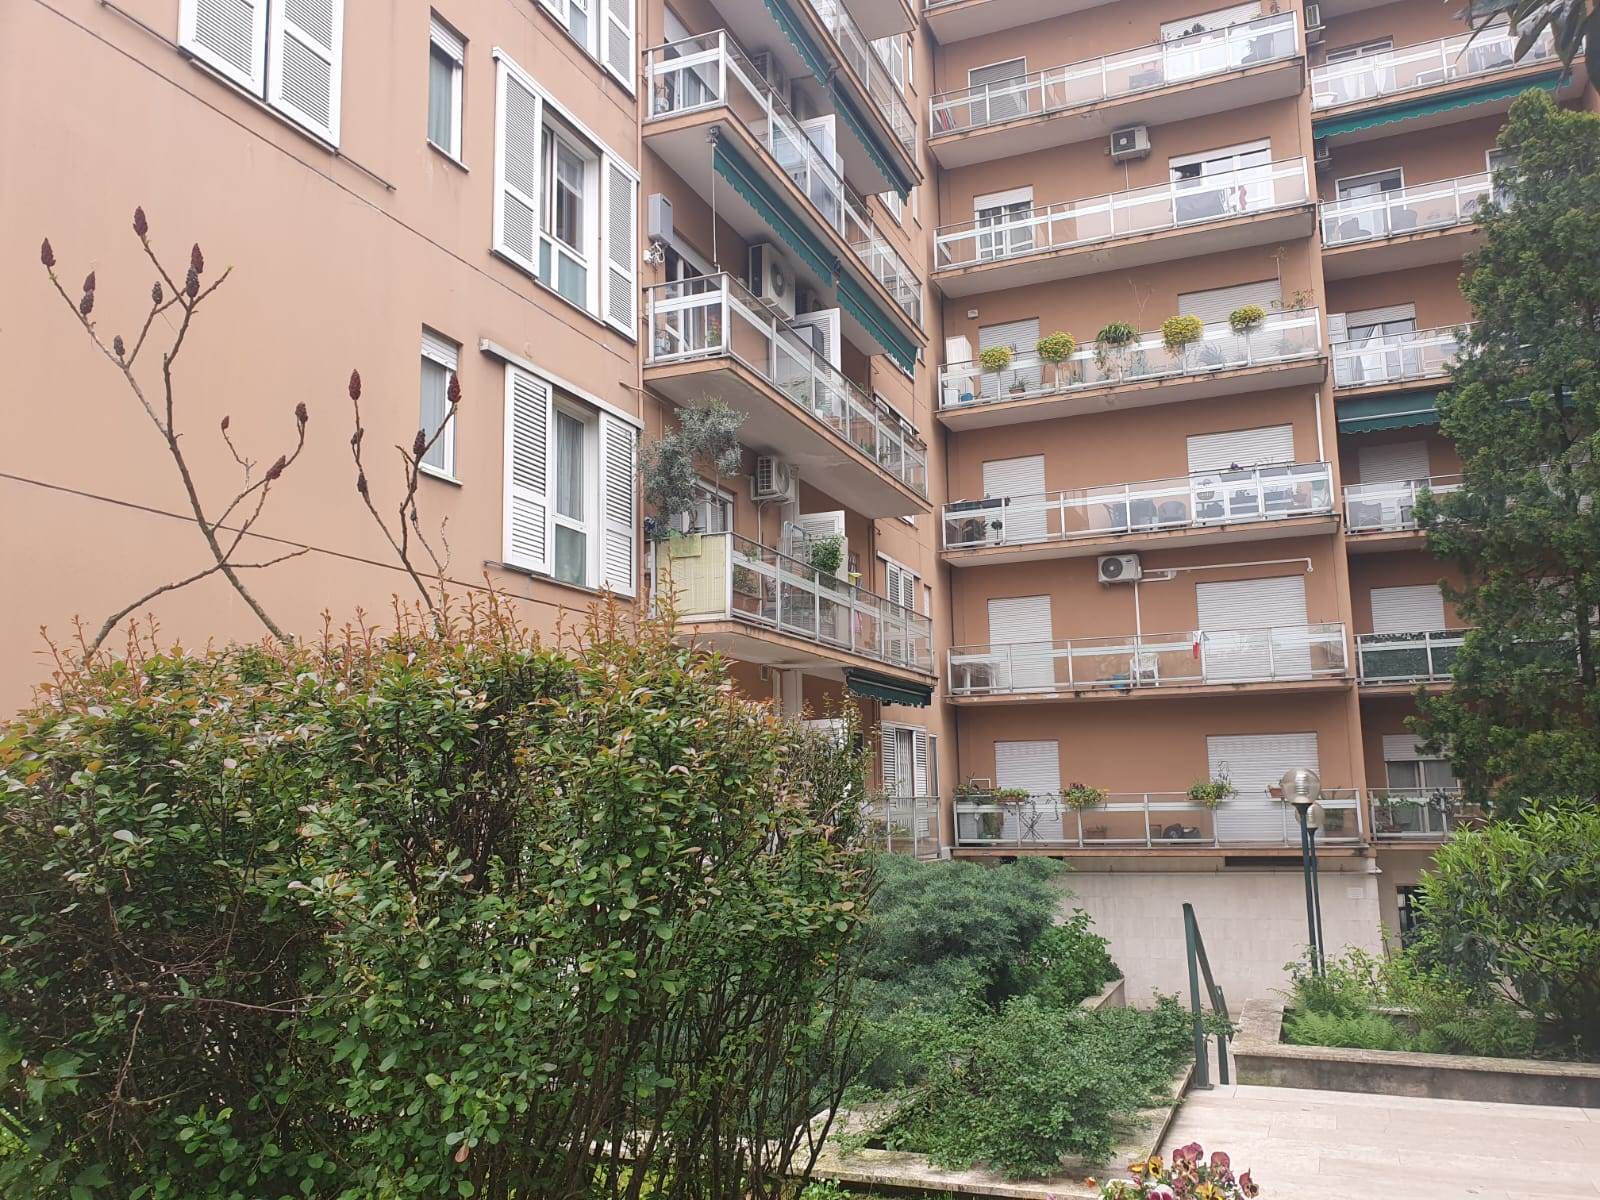 Rif: 1/128 L'Abbruzzi Gruppo Immobiliare propone in Sesto San Giovanni, Zona: Cascina Gatti, via Marzabotto, piccolo bilocale/ampio monolocale ben 